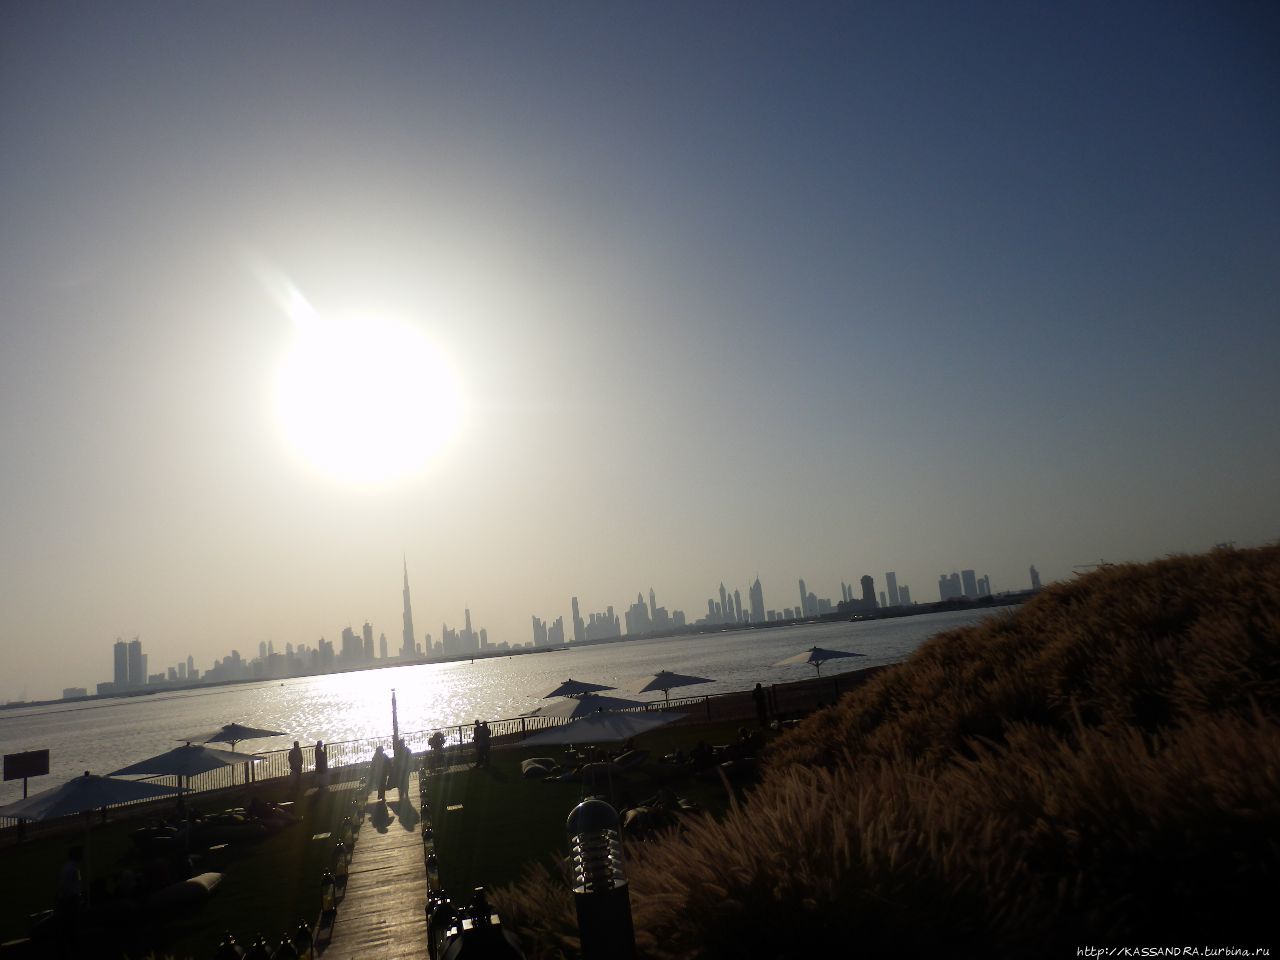 Новый район Дубай Крик Харбор. Новый мировой рекорд Дубай, ОАЭ